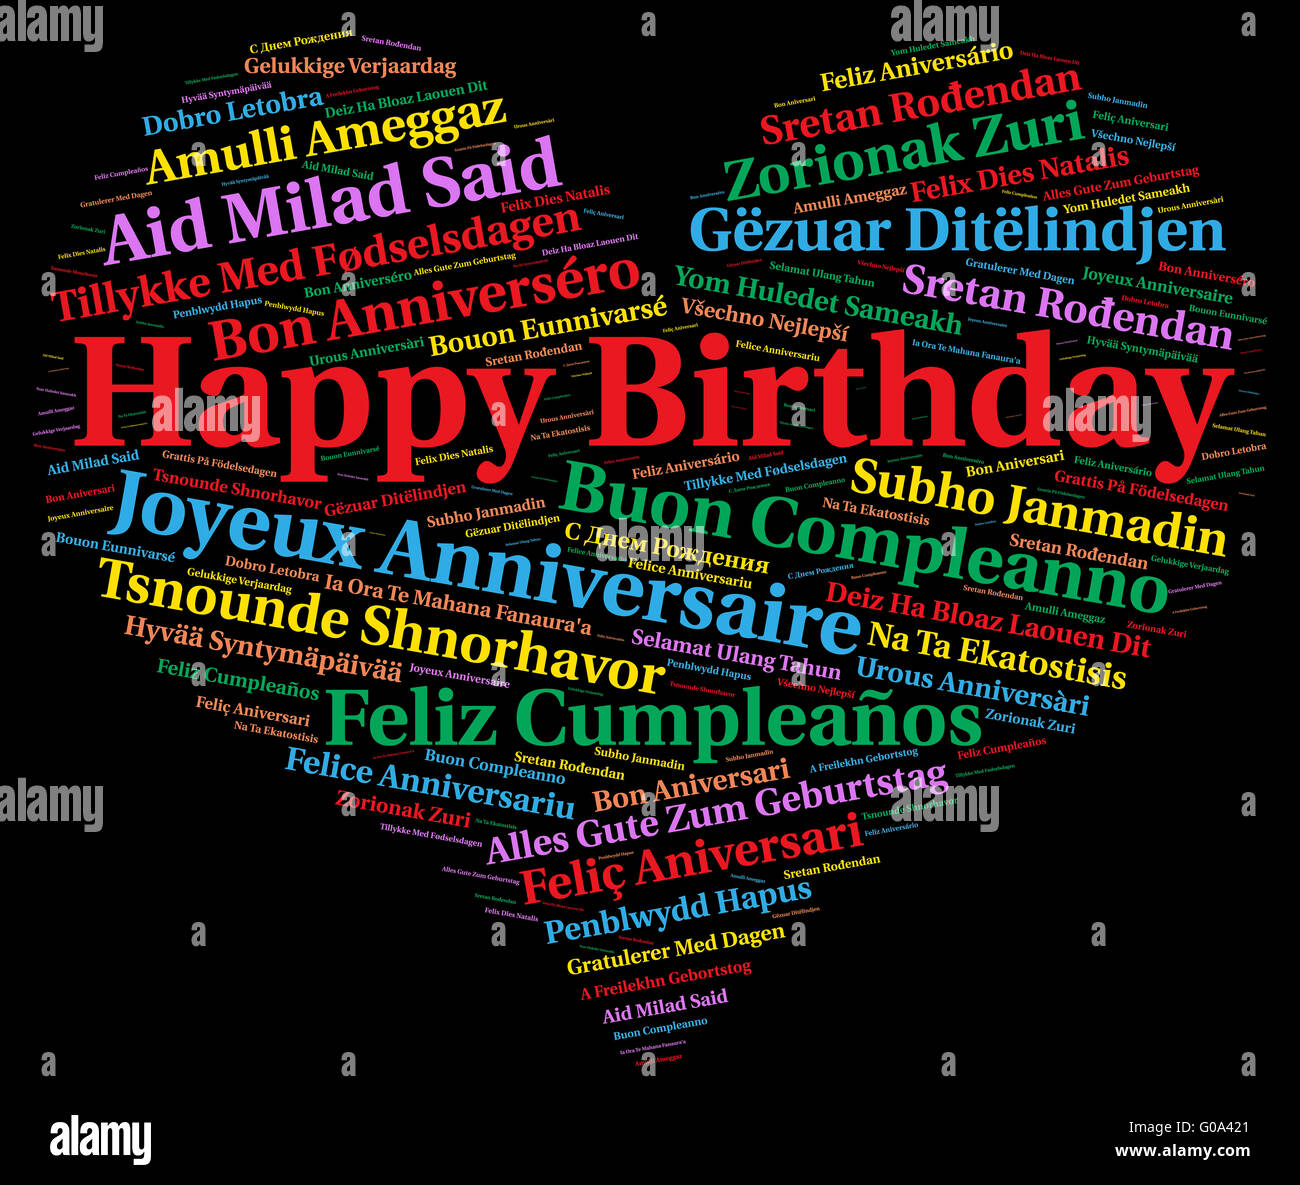 Alles Gute Zum Geburtstag In Verschiedenen Sprachen Stockfotografie Alamy